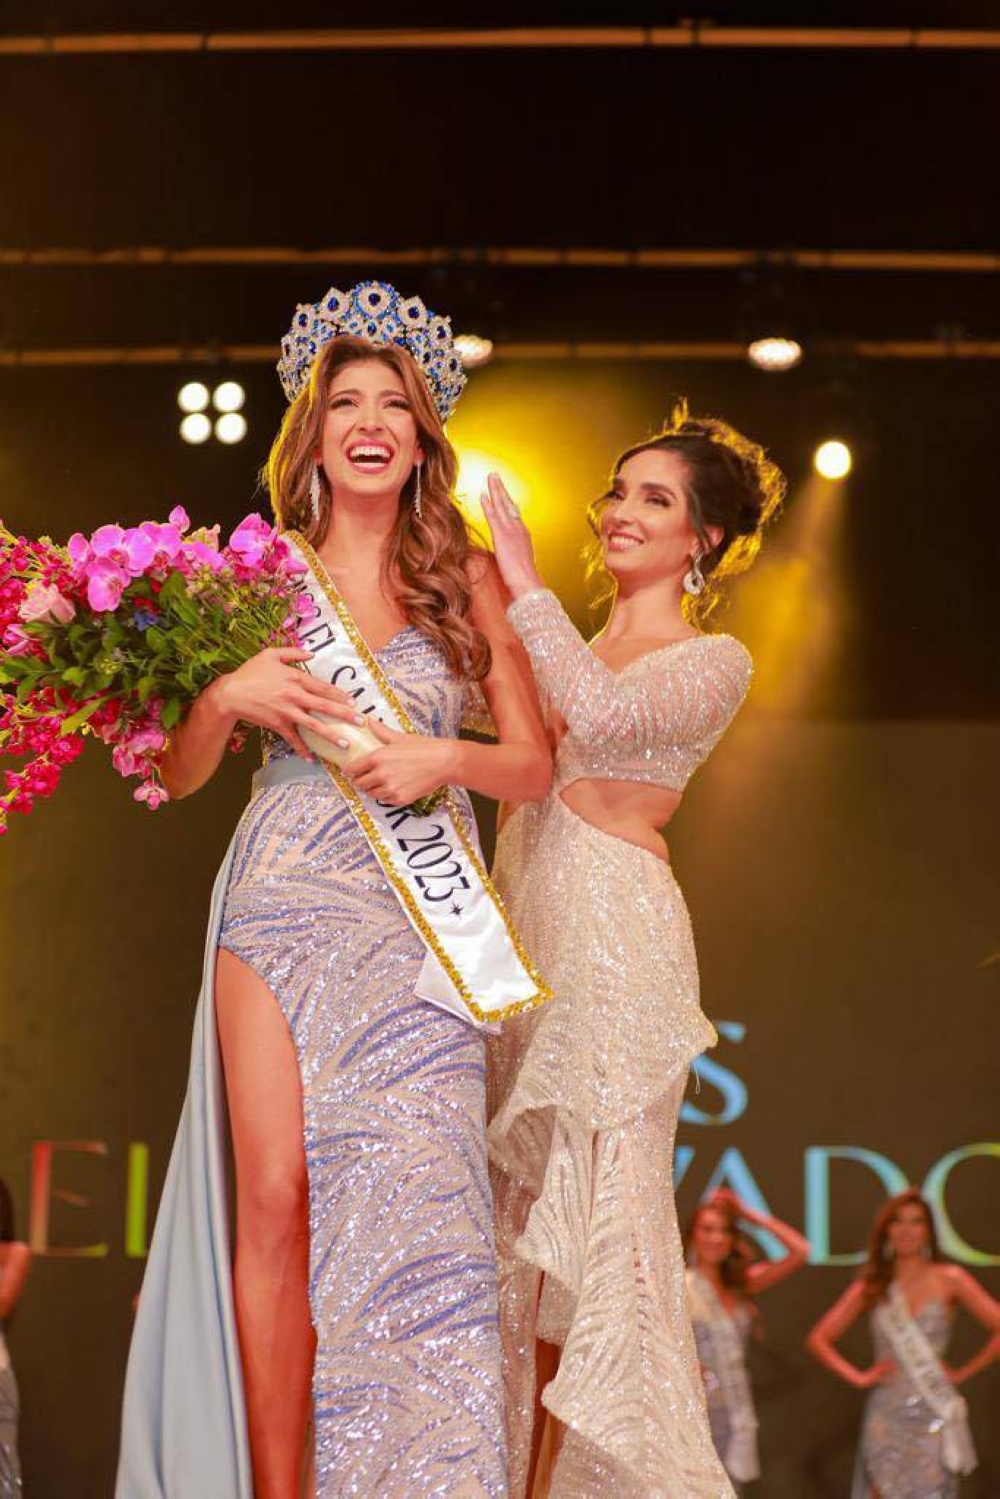 La feliz ganadora tras ser coronada por Alejandra Guajardo. / Foto: Reinado de El Salvador